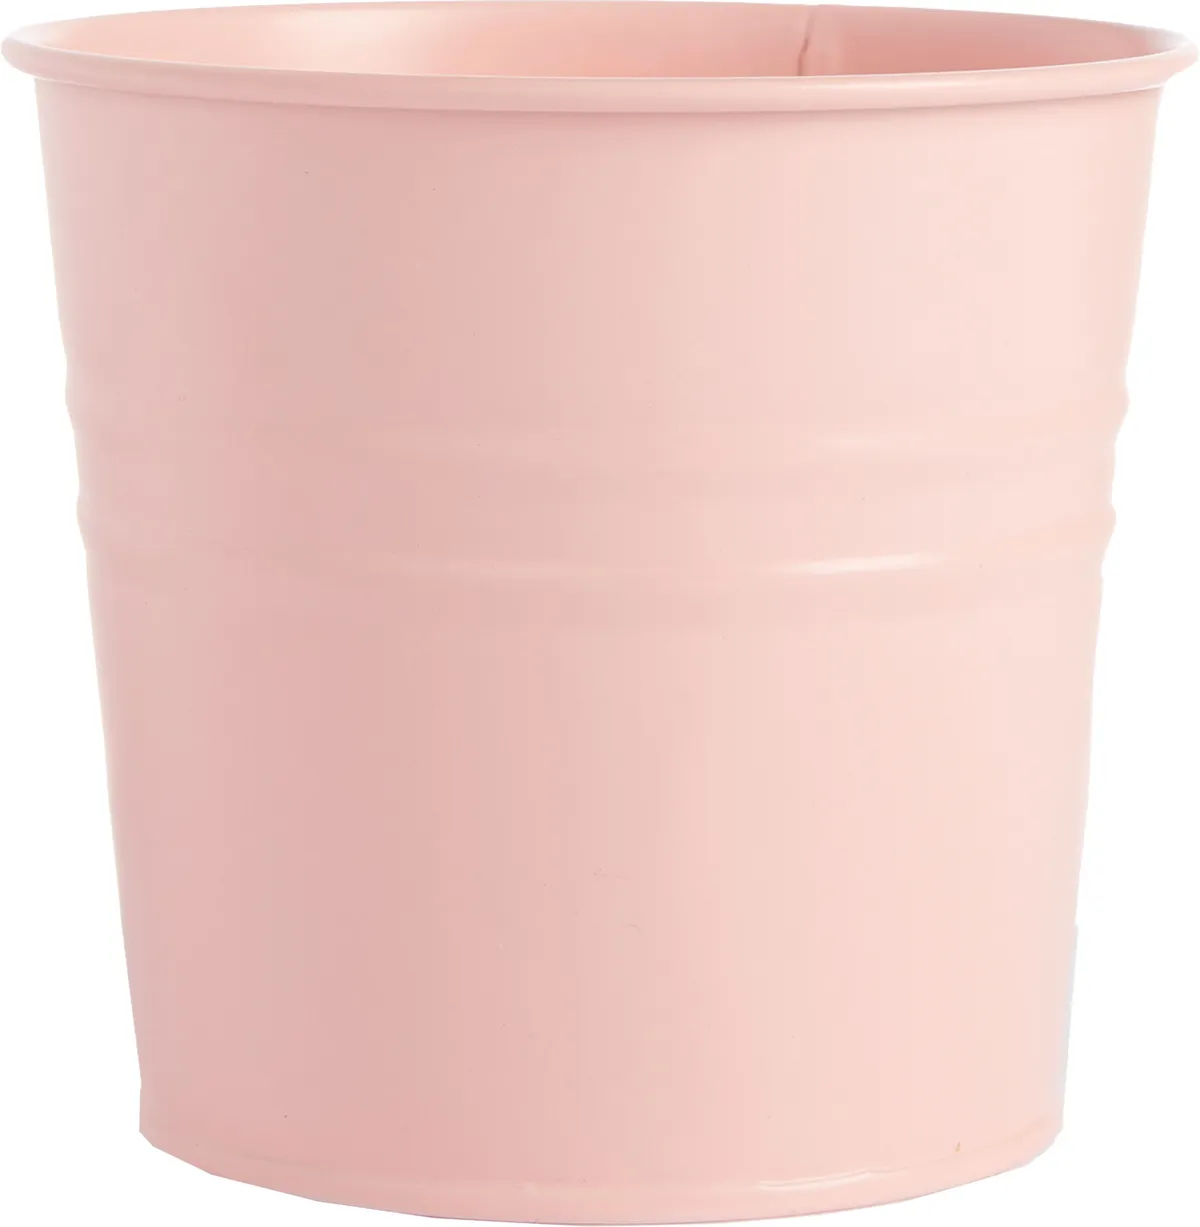 Tin plant pot in Pink, £1, Primark